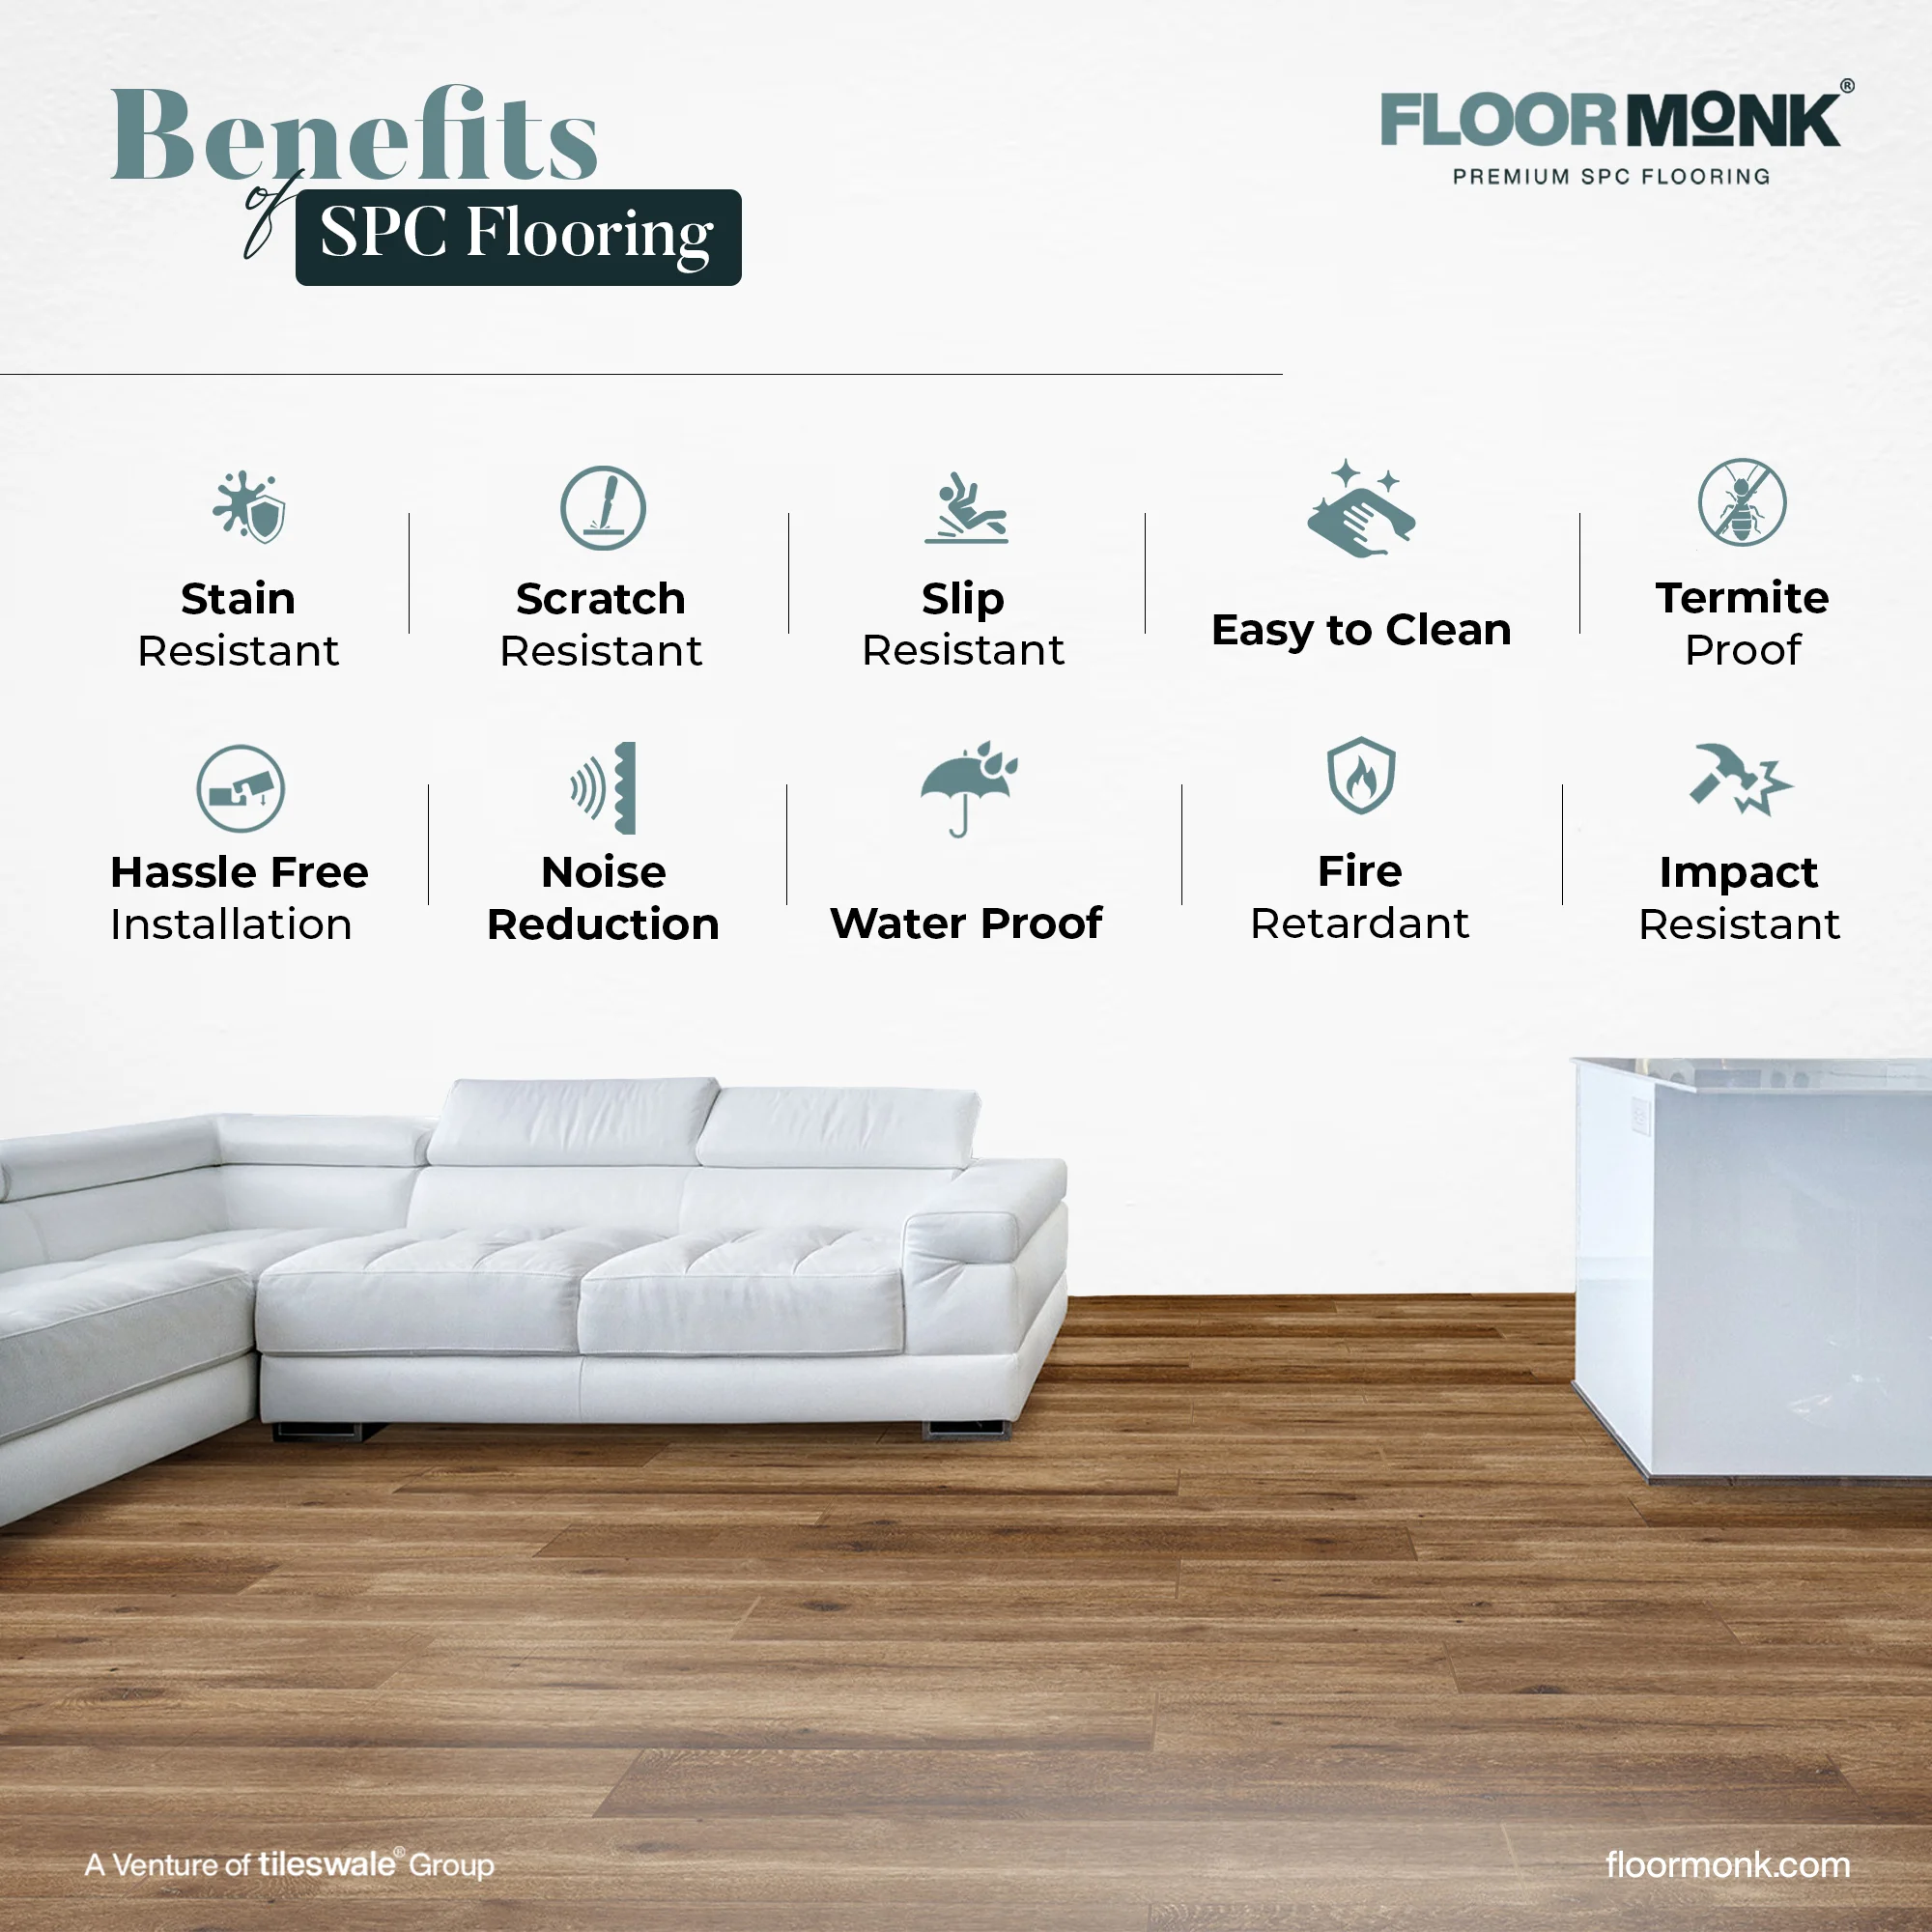 Advantages of SPC Flooring